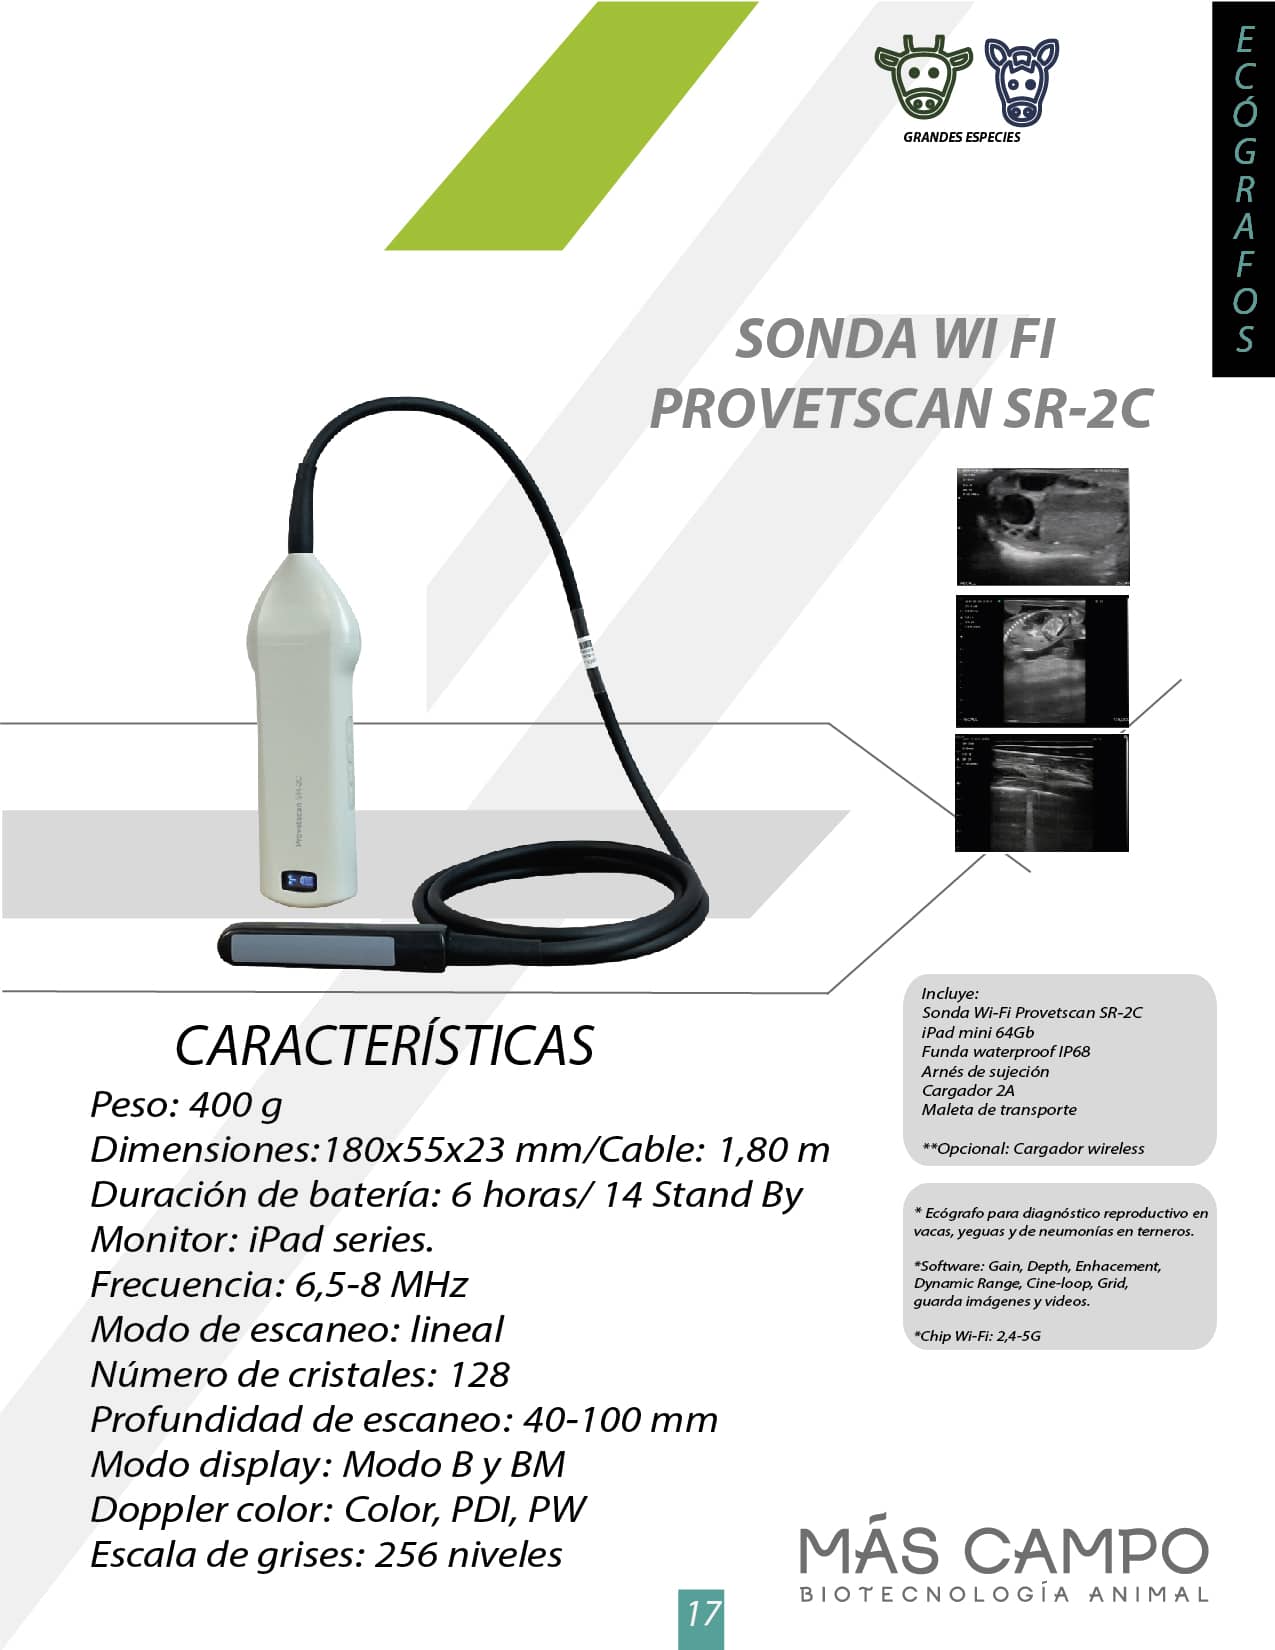 Ecógrafo - Sonda wifi SR- 2C